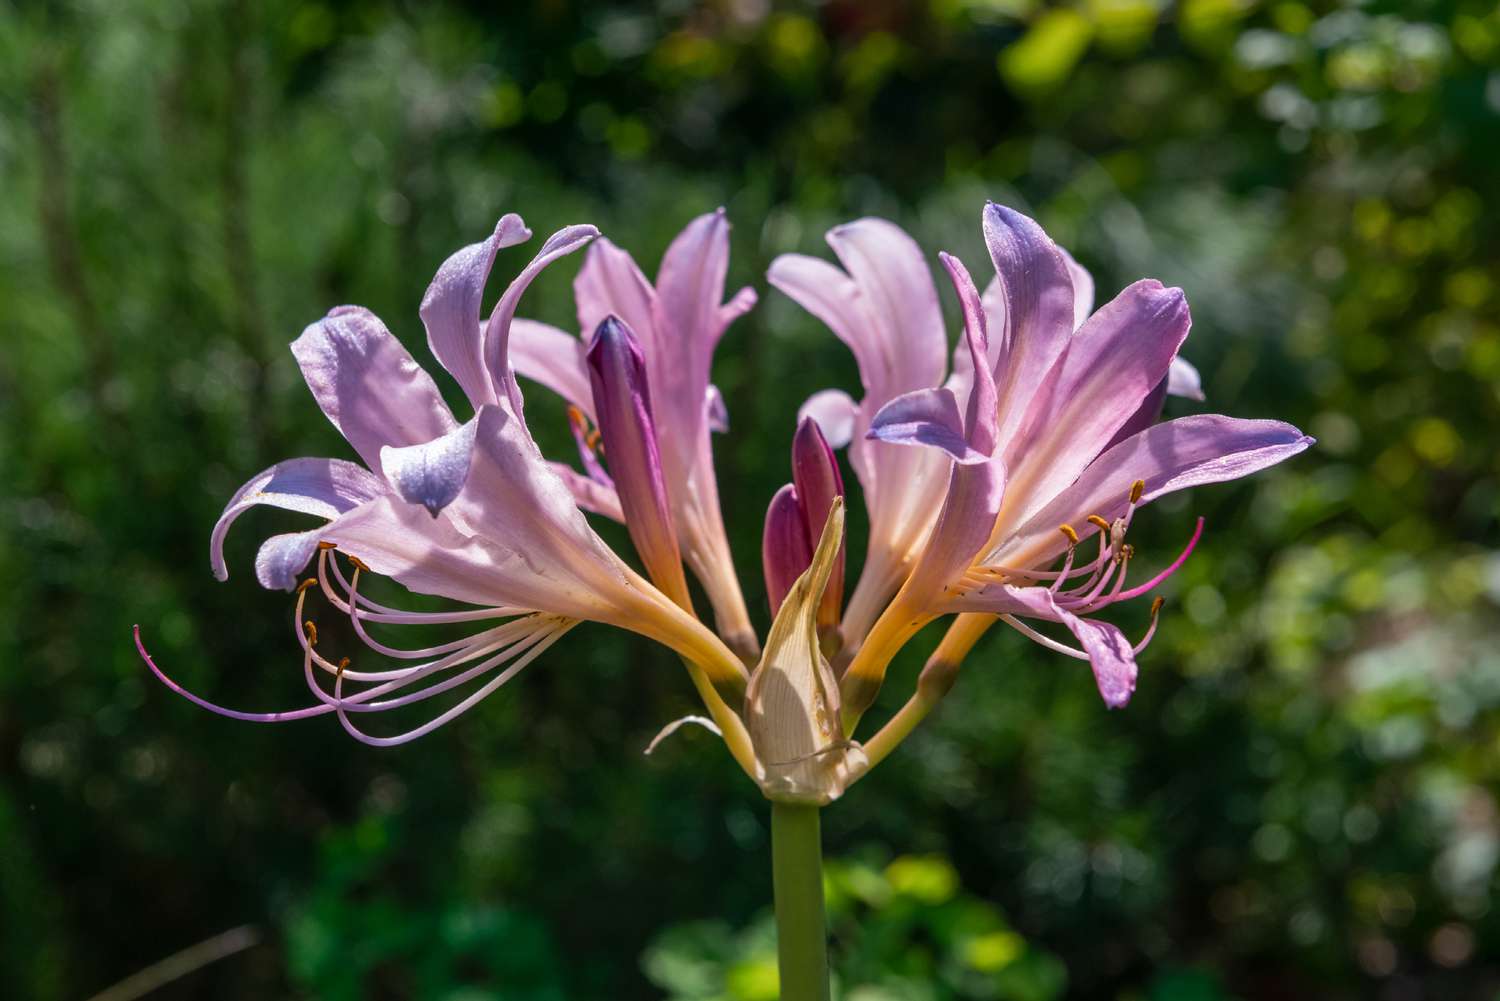 Auferstehungslilie mit trompetenförmigen violetten Blüten, die am Ende des Stängels im Sonnenlicht stehen